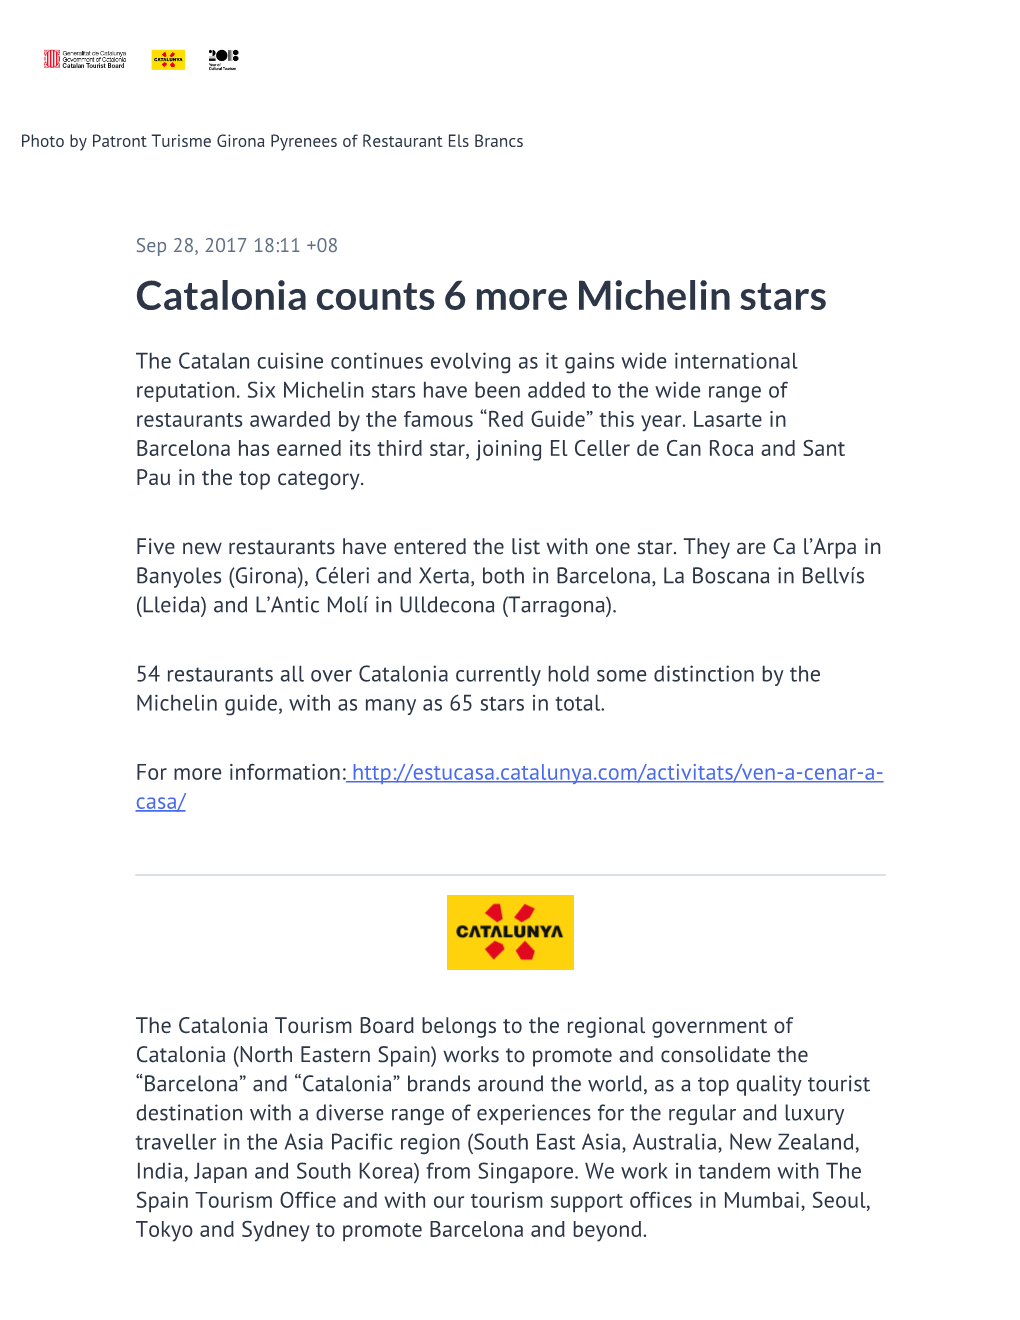 Catalonia Counts 6 More Michelin Stars